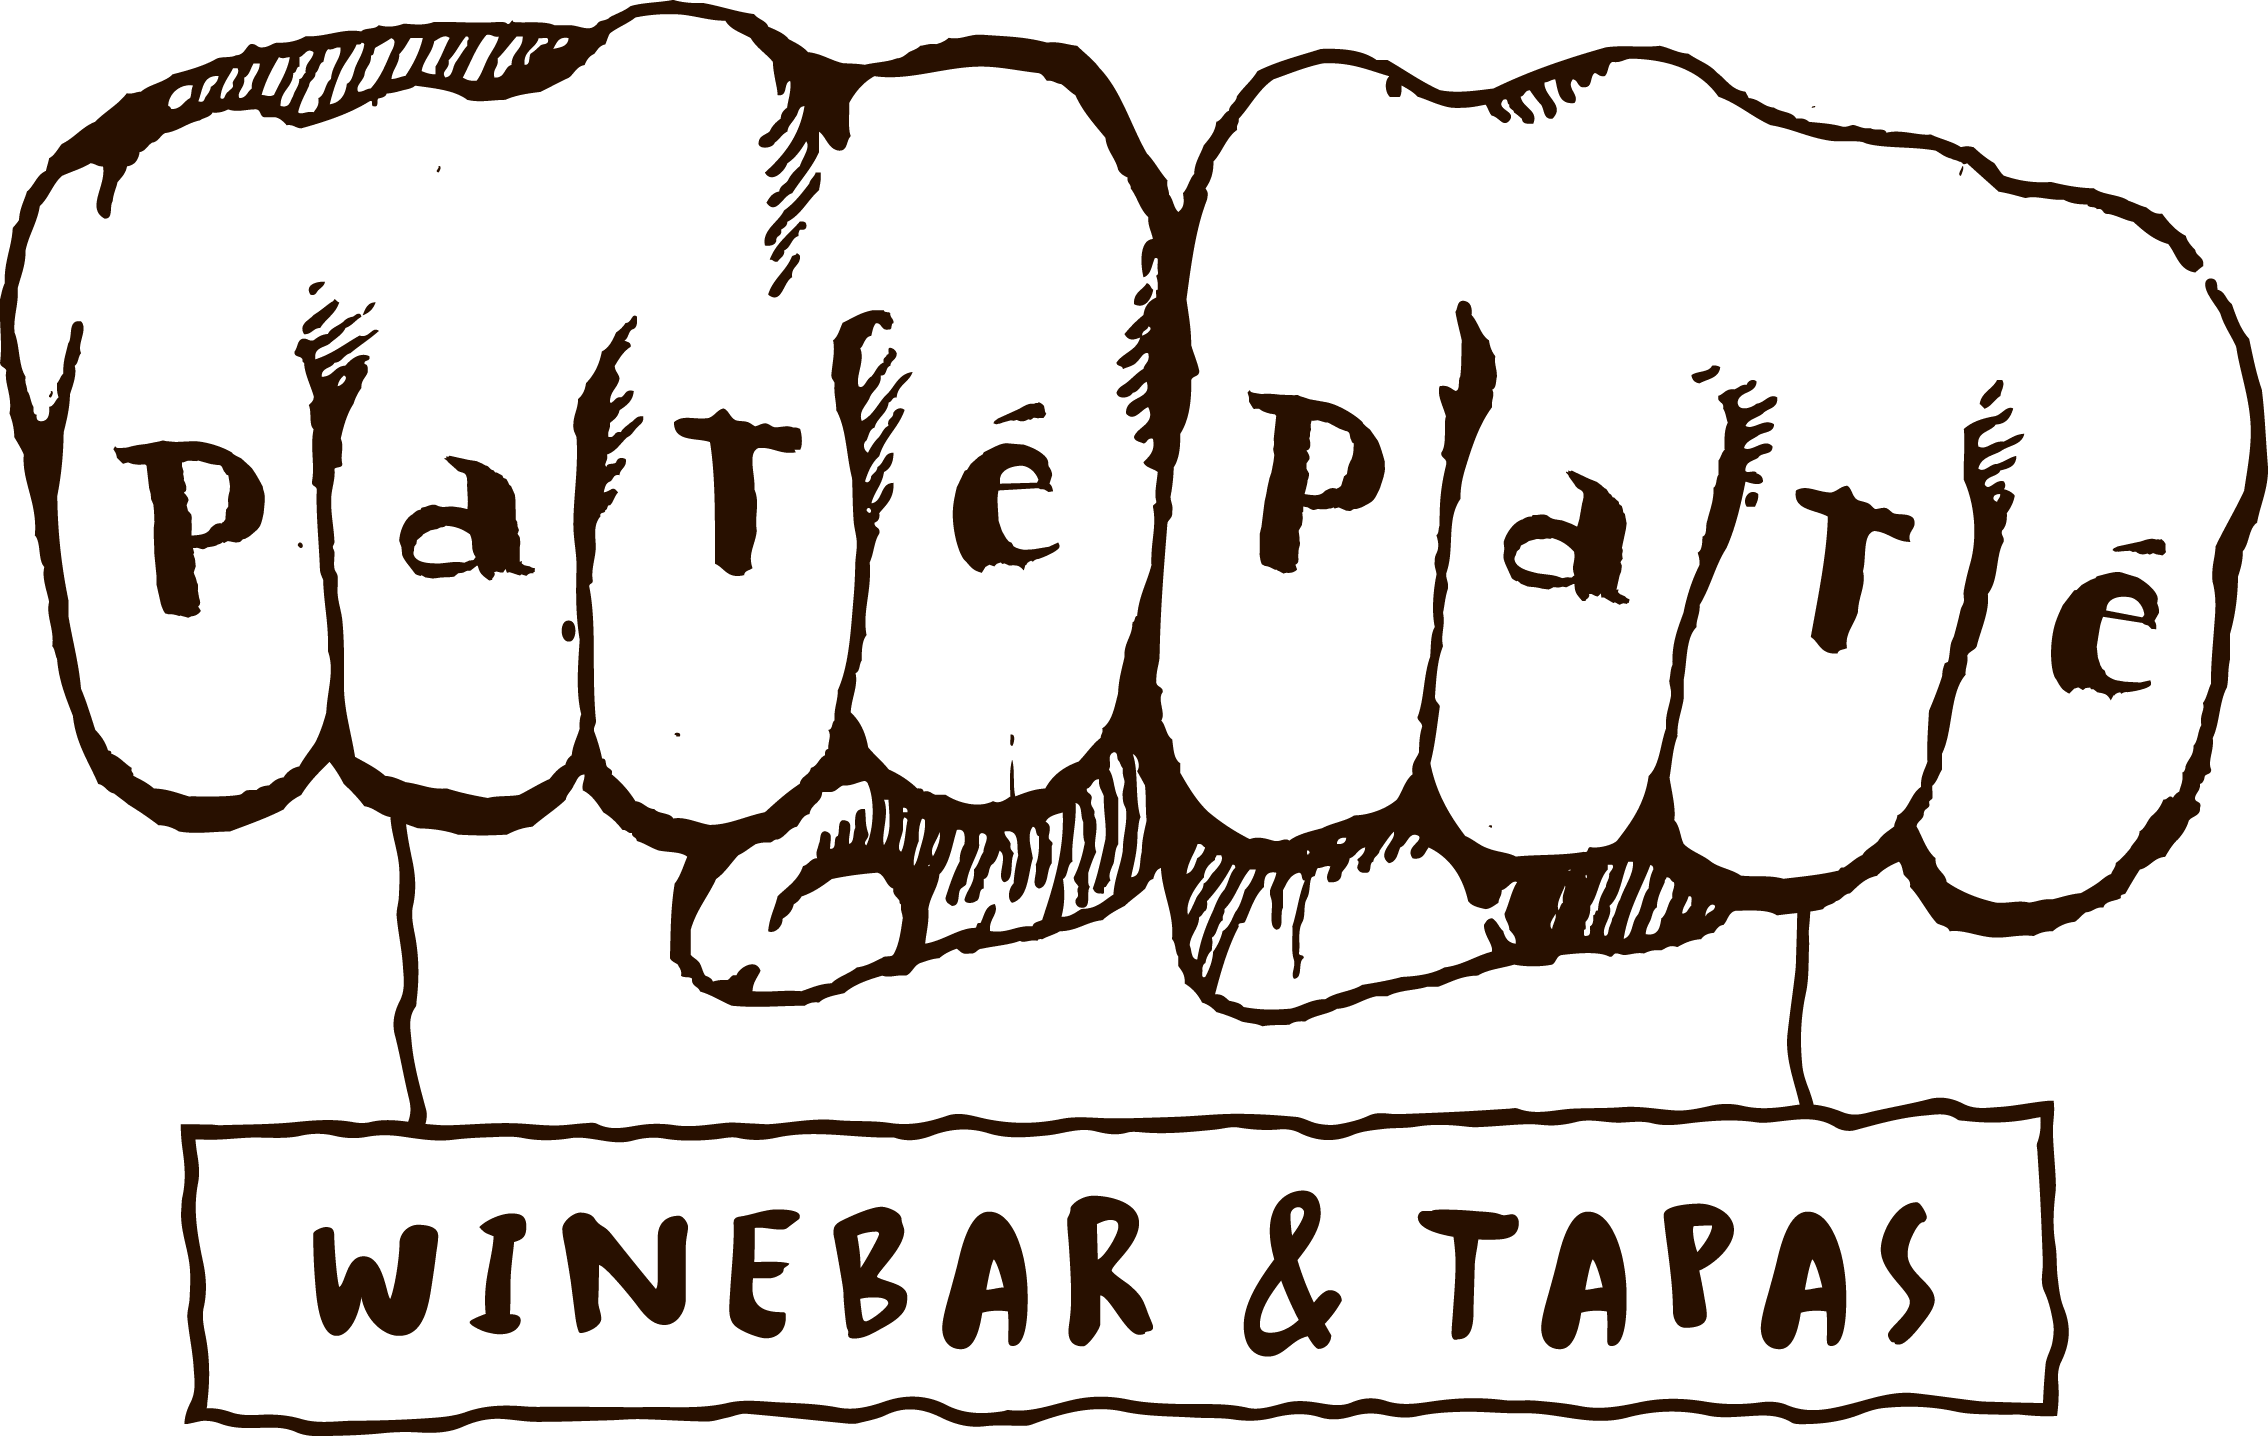 Patépaté Winebar & Tapas Bar, Spanish - Patépaté Winebar & Tapas Bar, Spanish (2268x1436)